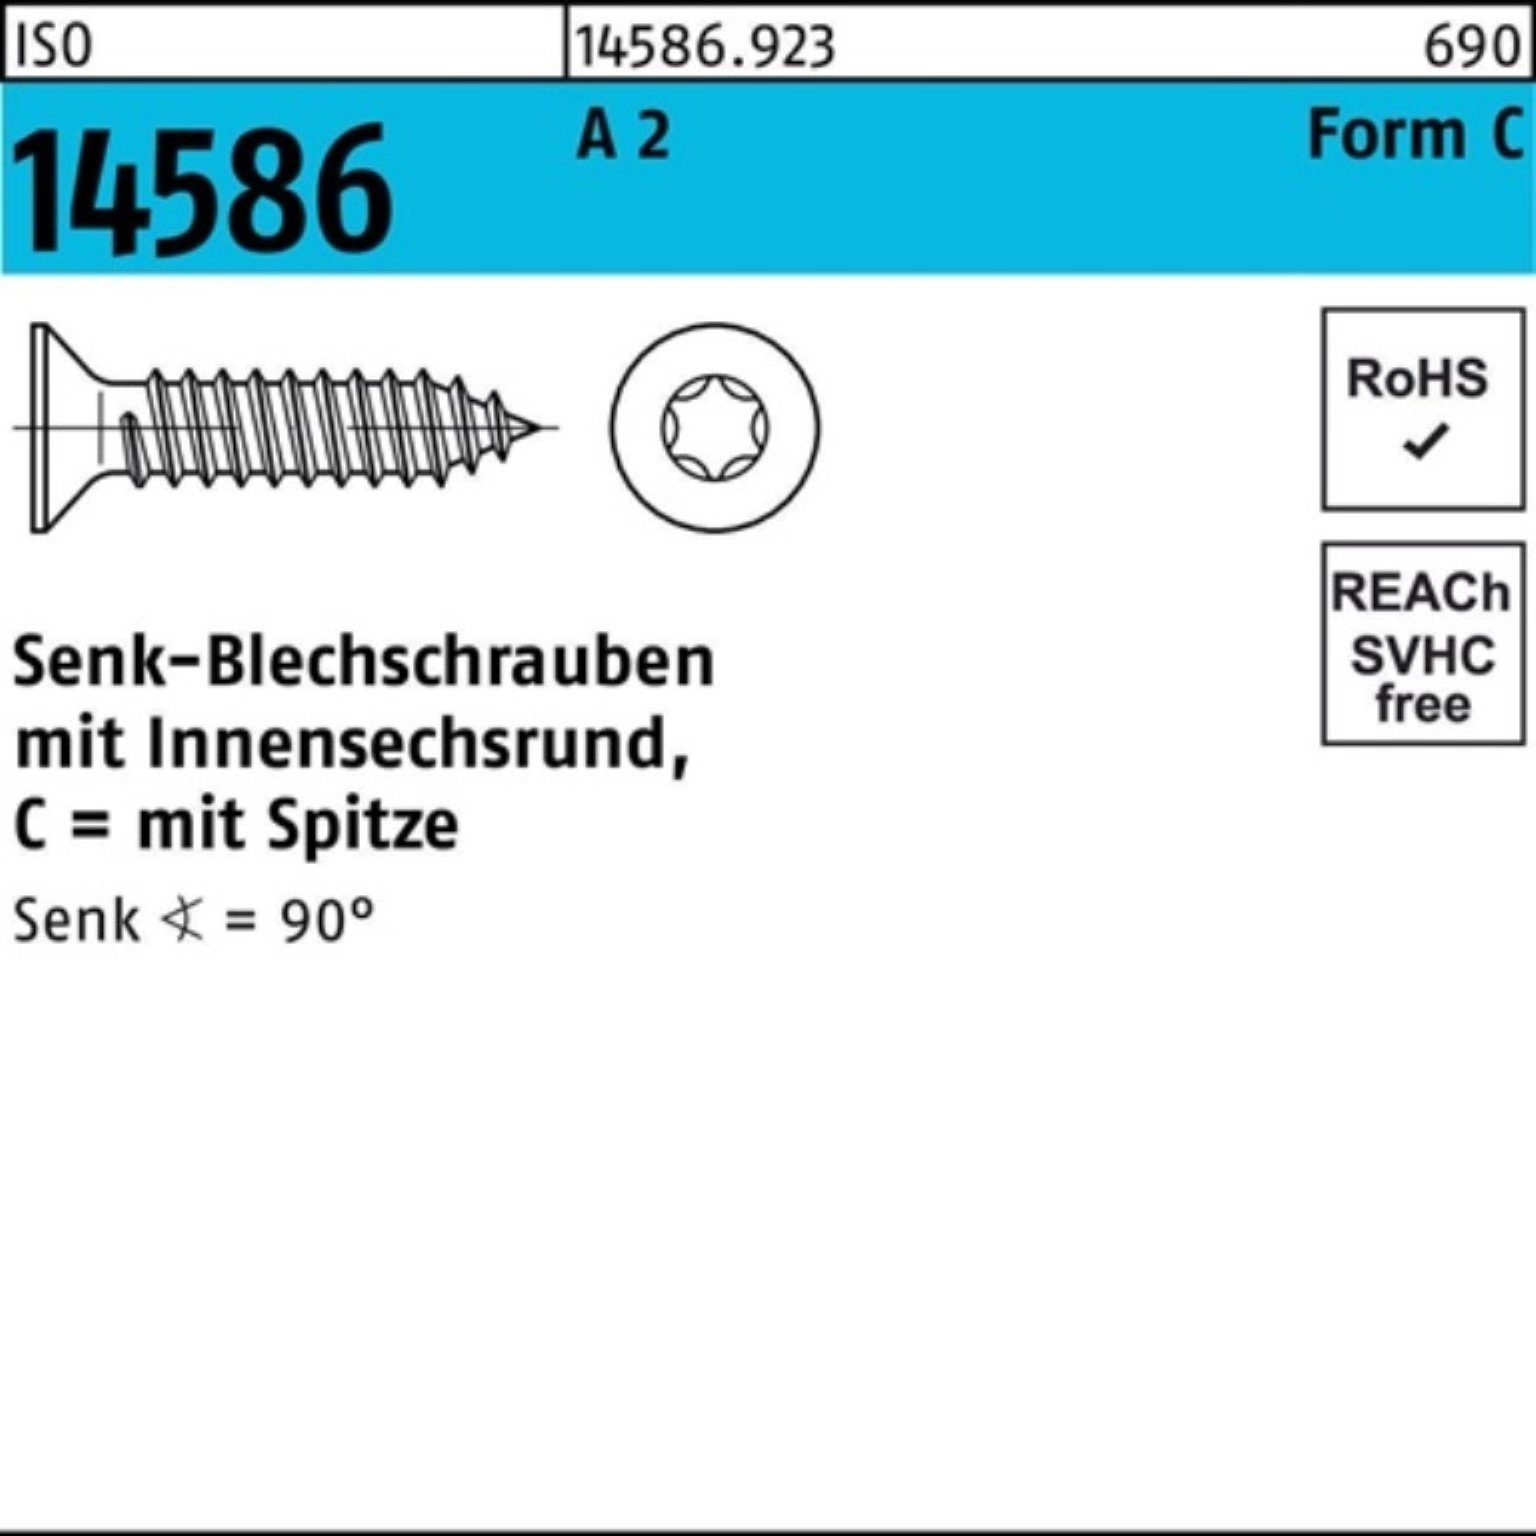 Reyher ISO -C Schraube 50 14586 T25 Senkblechschraube Pack A 250er 4,8x 2 2 ISR/Spitze